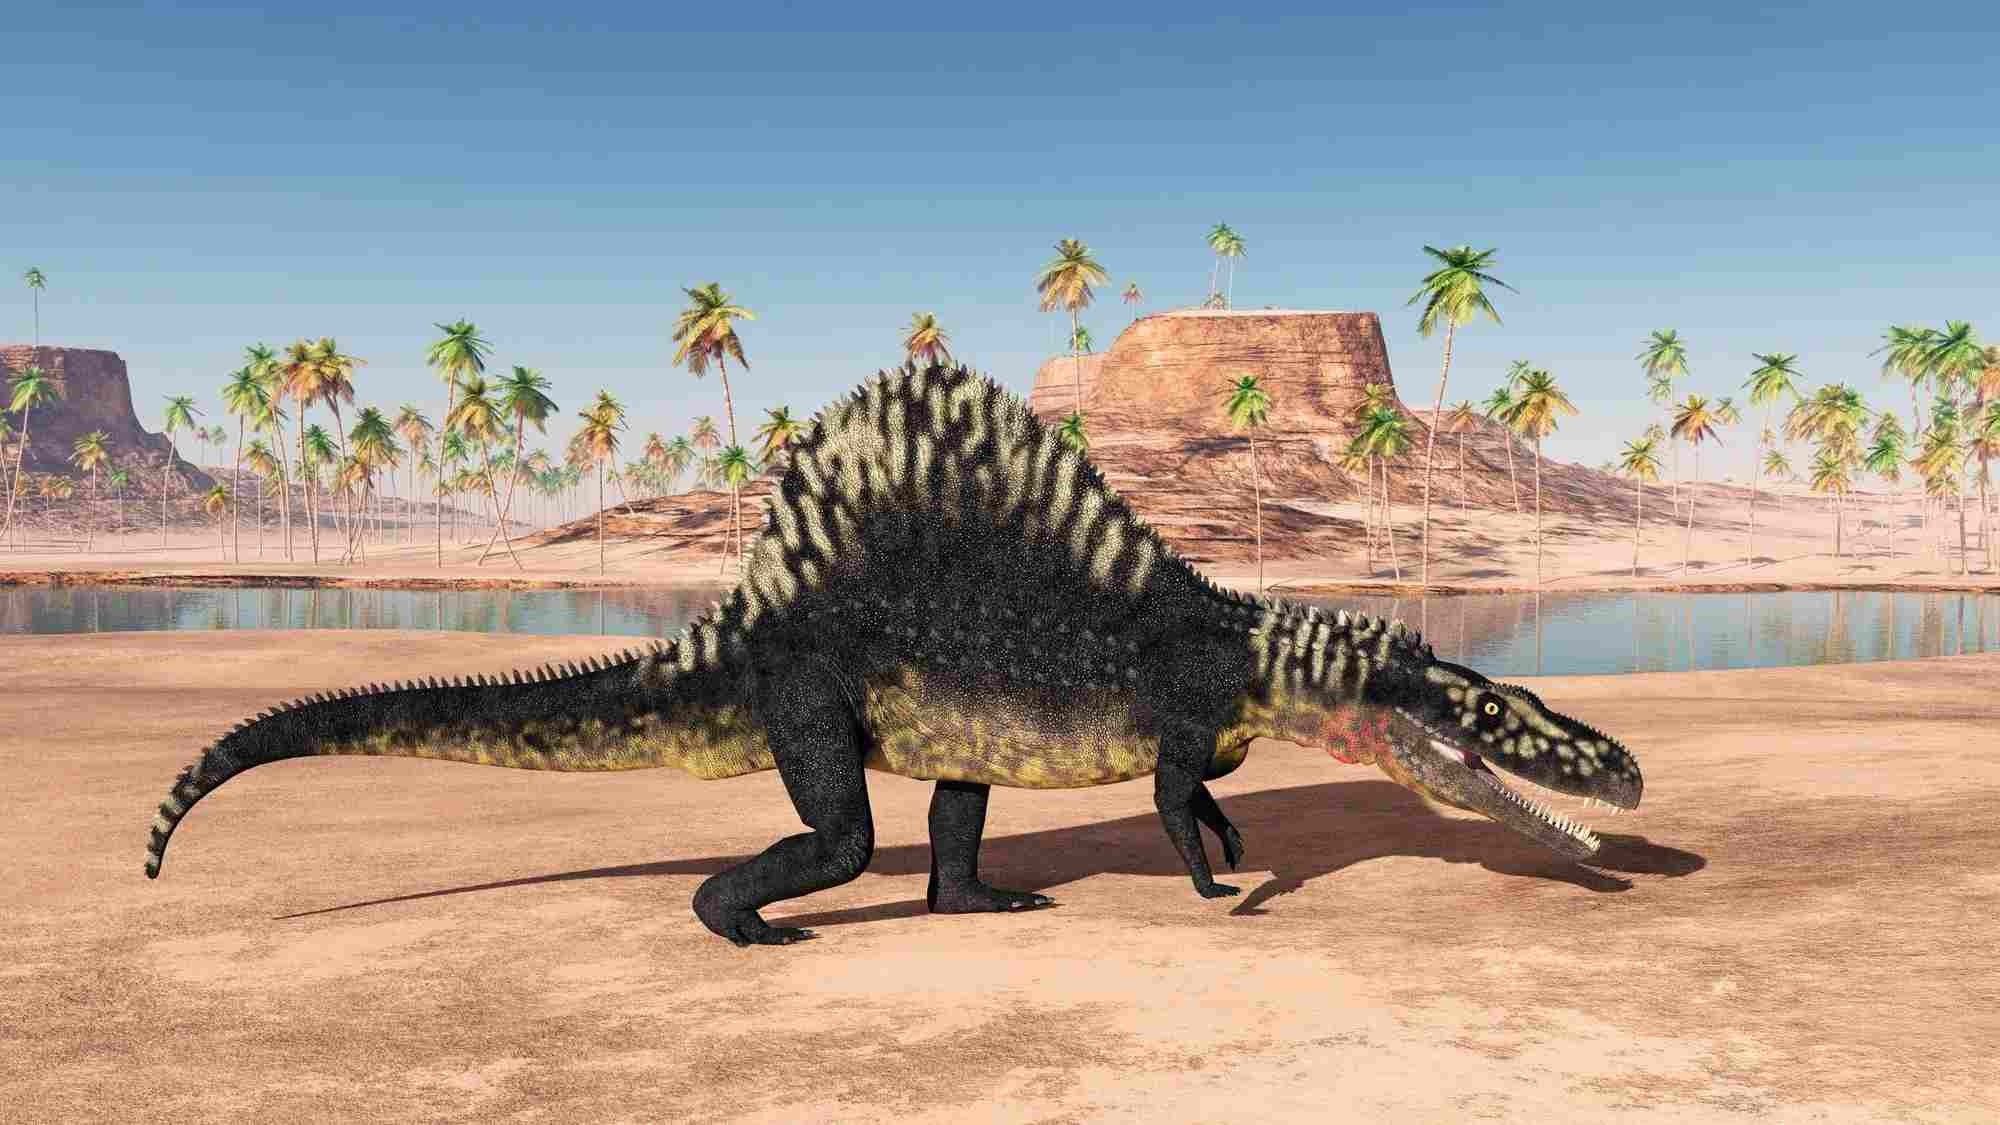 The fossils of Arizonasaurus babbitti were found in the rock strata